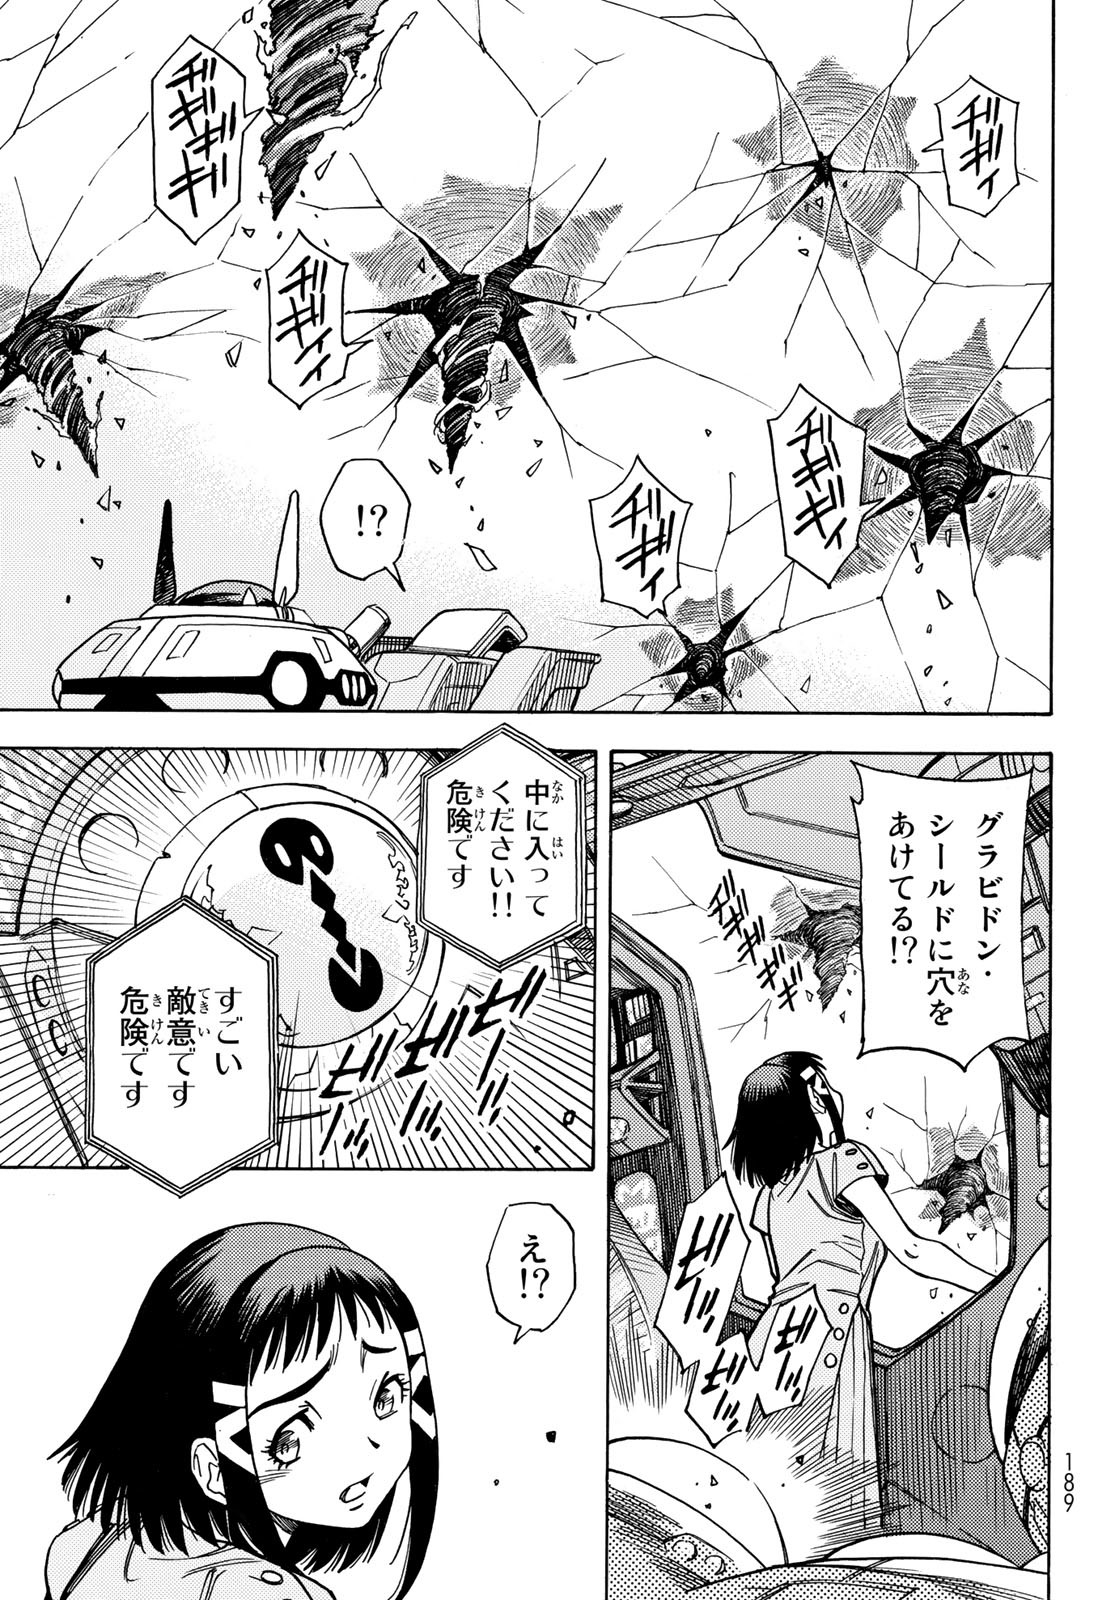 Mugou no Schnell Gear: Chikyuugai Kisouka AI - Chapter 44 - Page 23